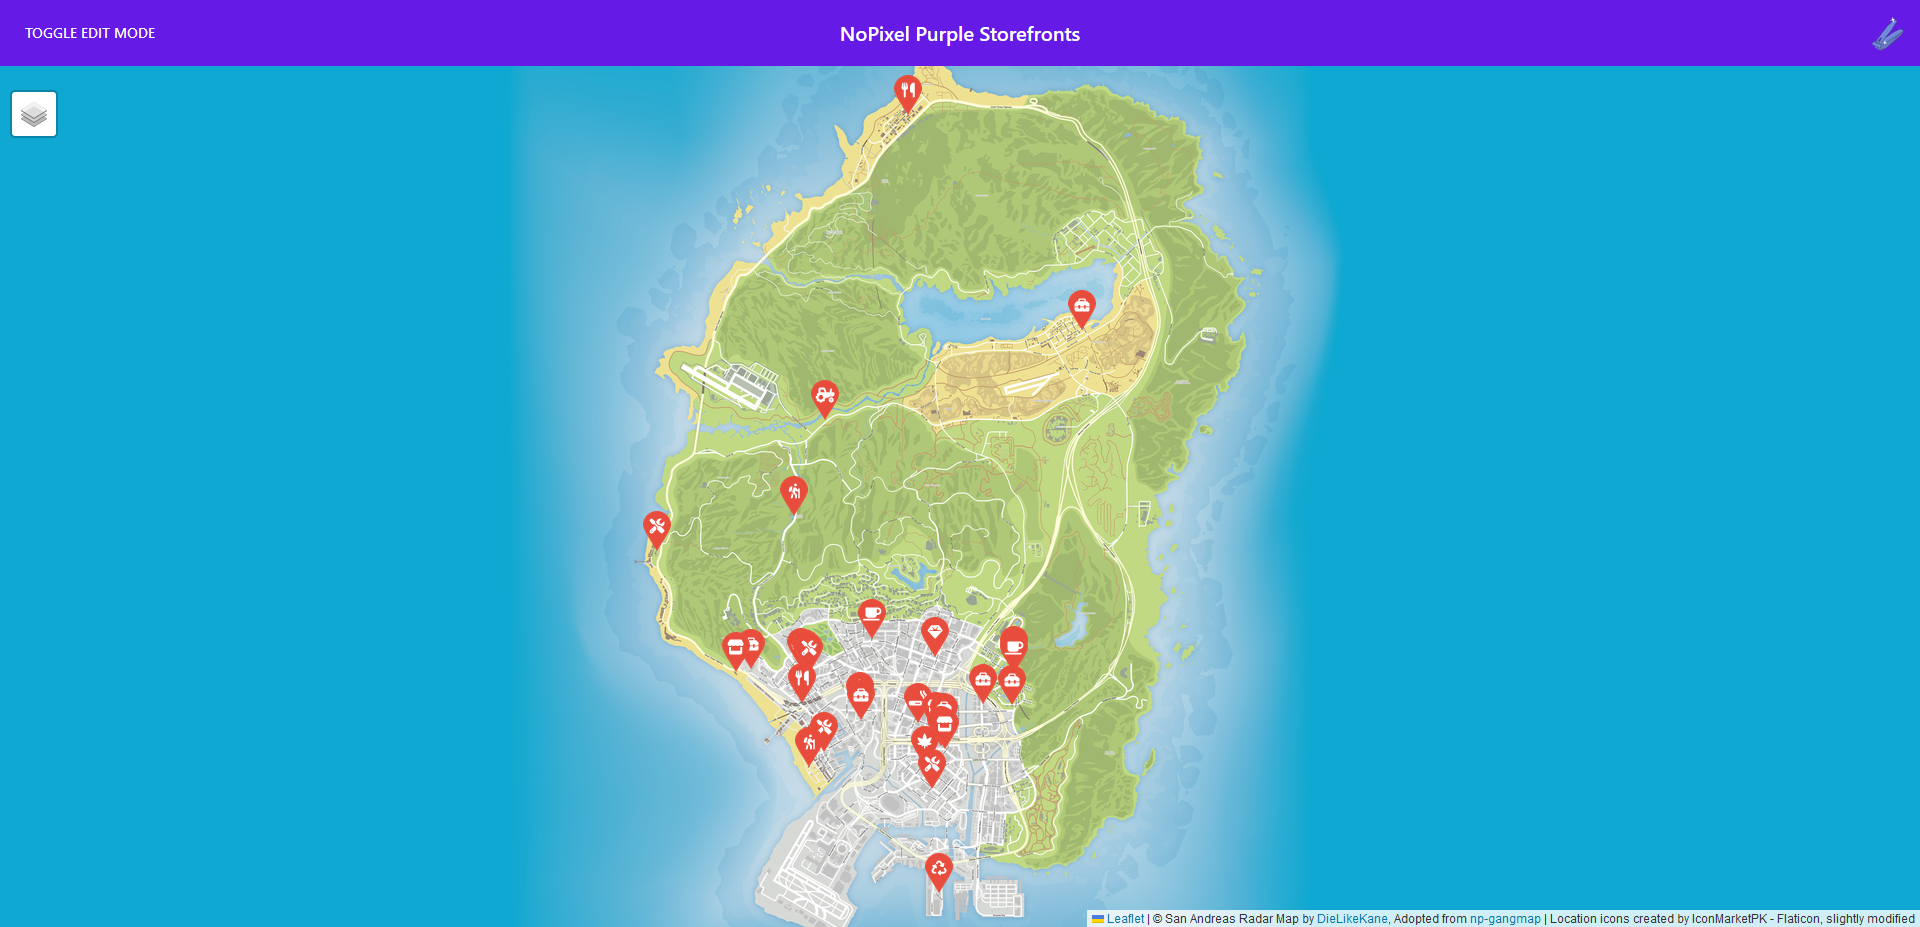 NoPixel Purple Storefronts Map